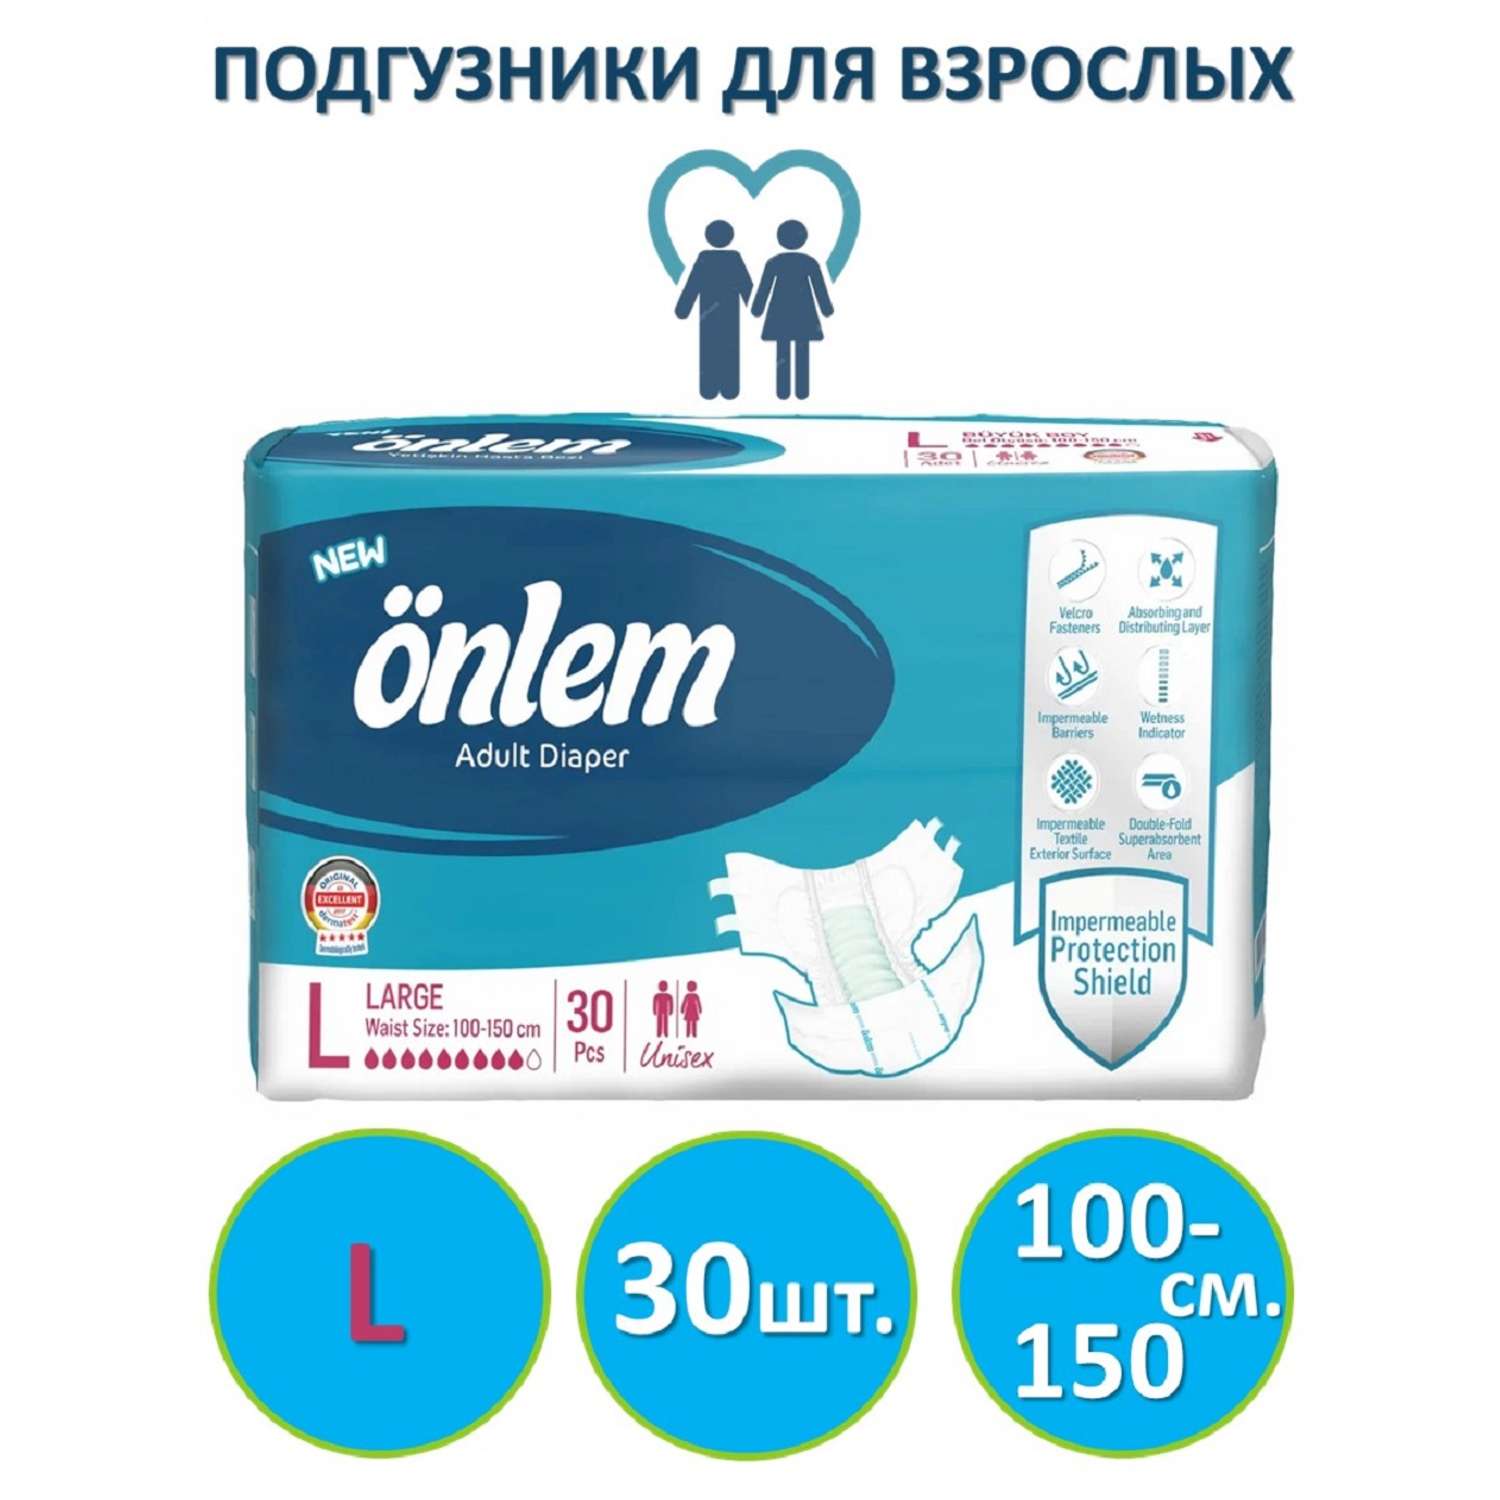 Подгузники для взрослых Onlem размер L (100-150cм.) 30 шт. в упаковке - фото 1